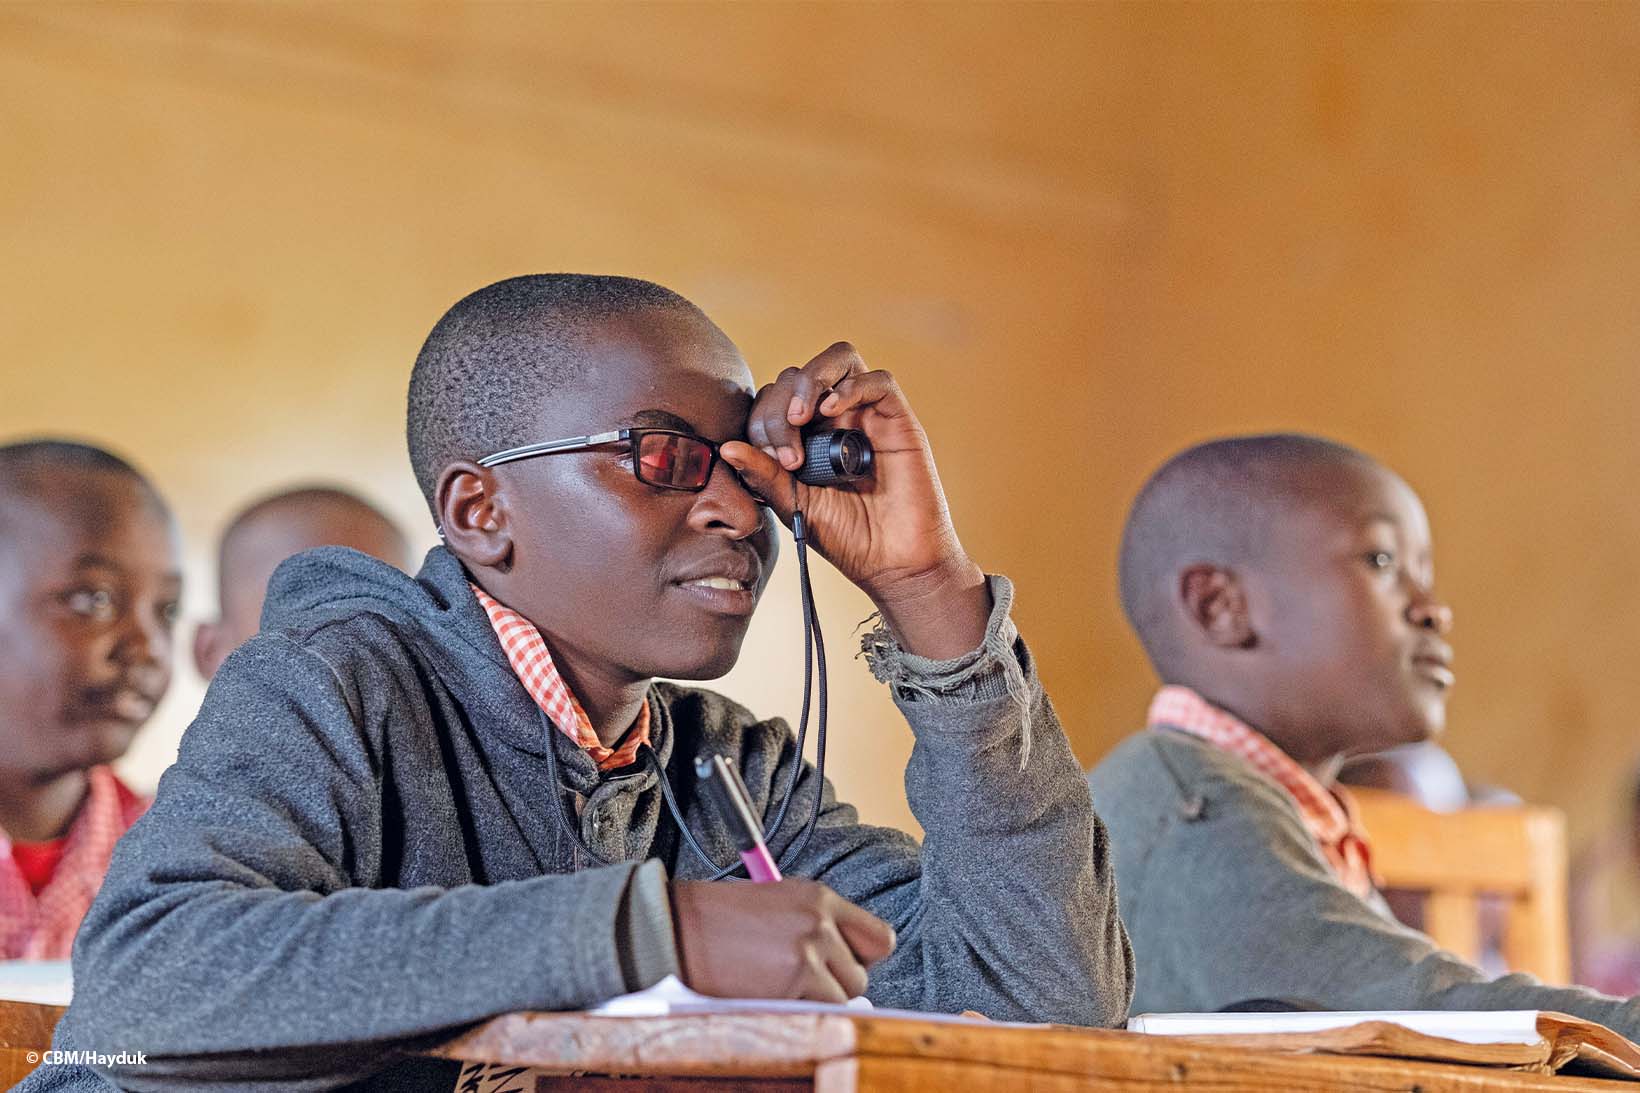 Un jeune Kenyan, qui porte des lunettes de soleil filtrant les UV, regarde le tableau noir avec un télescope tout en souriant. Il porte l’uniforme de son école. 